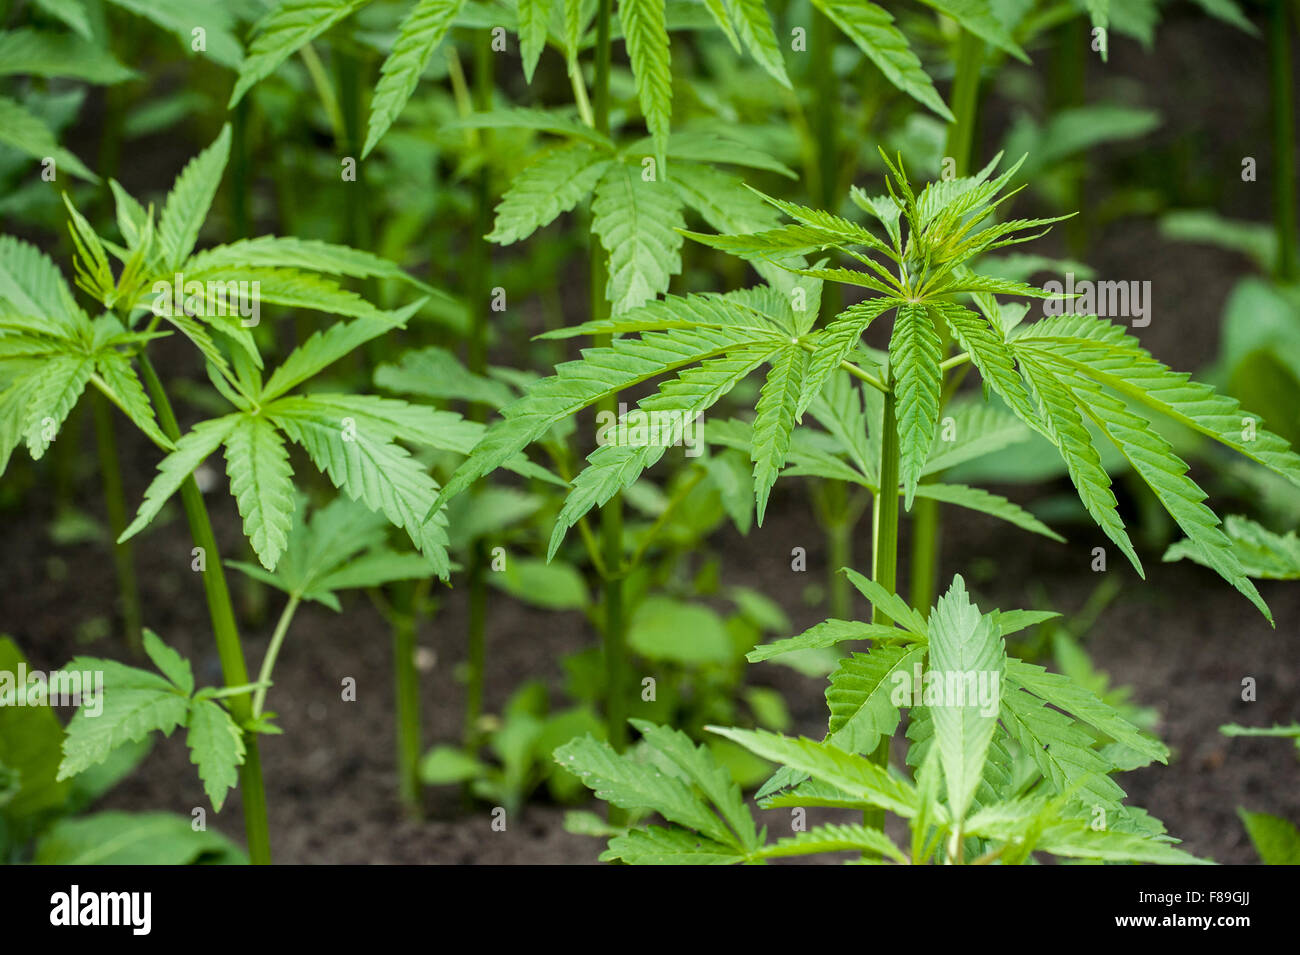 / Cannabis chanvre (Cannabis sativa) plantes croissant dans plantation Banque D'Images